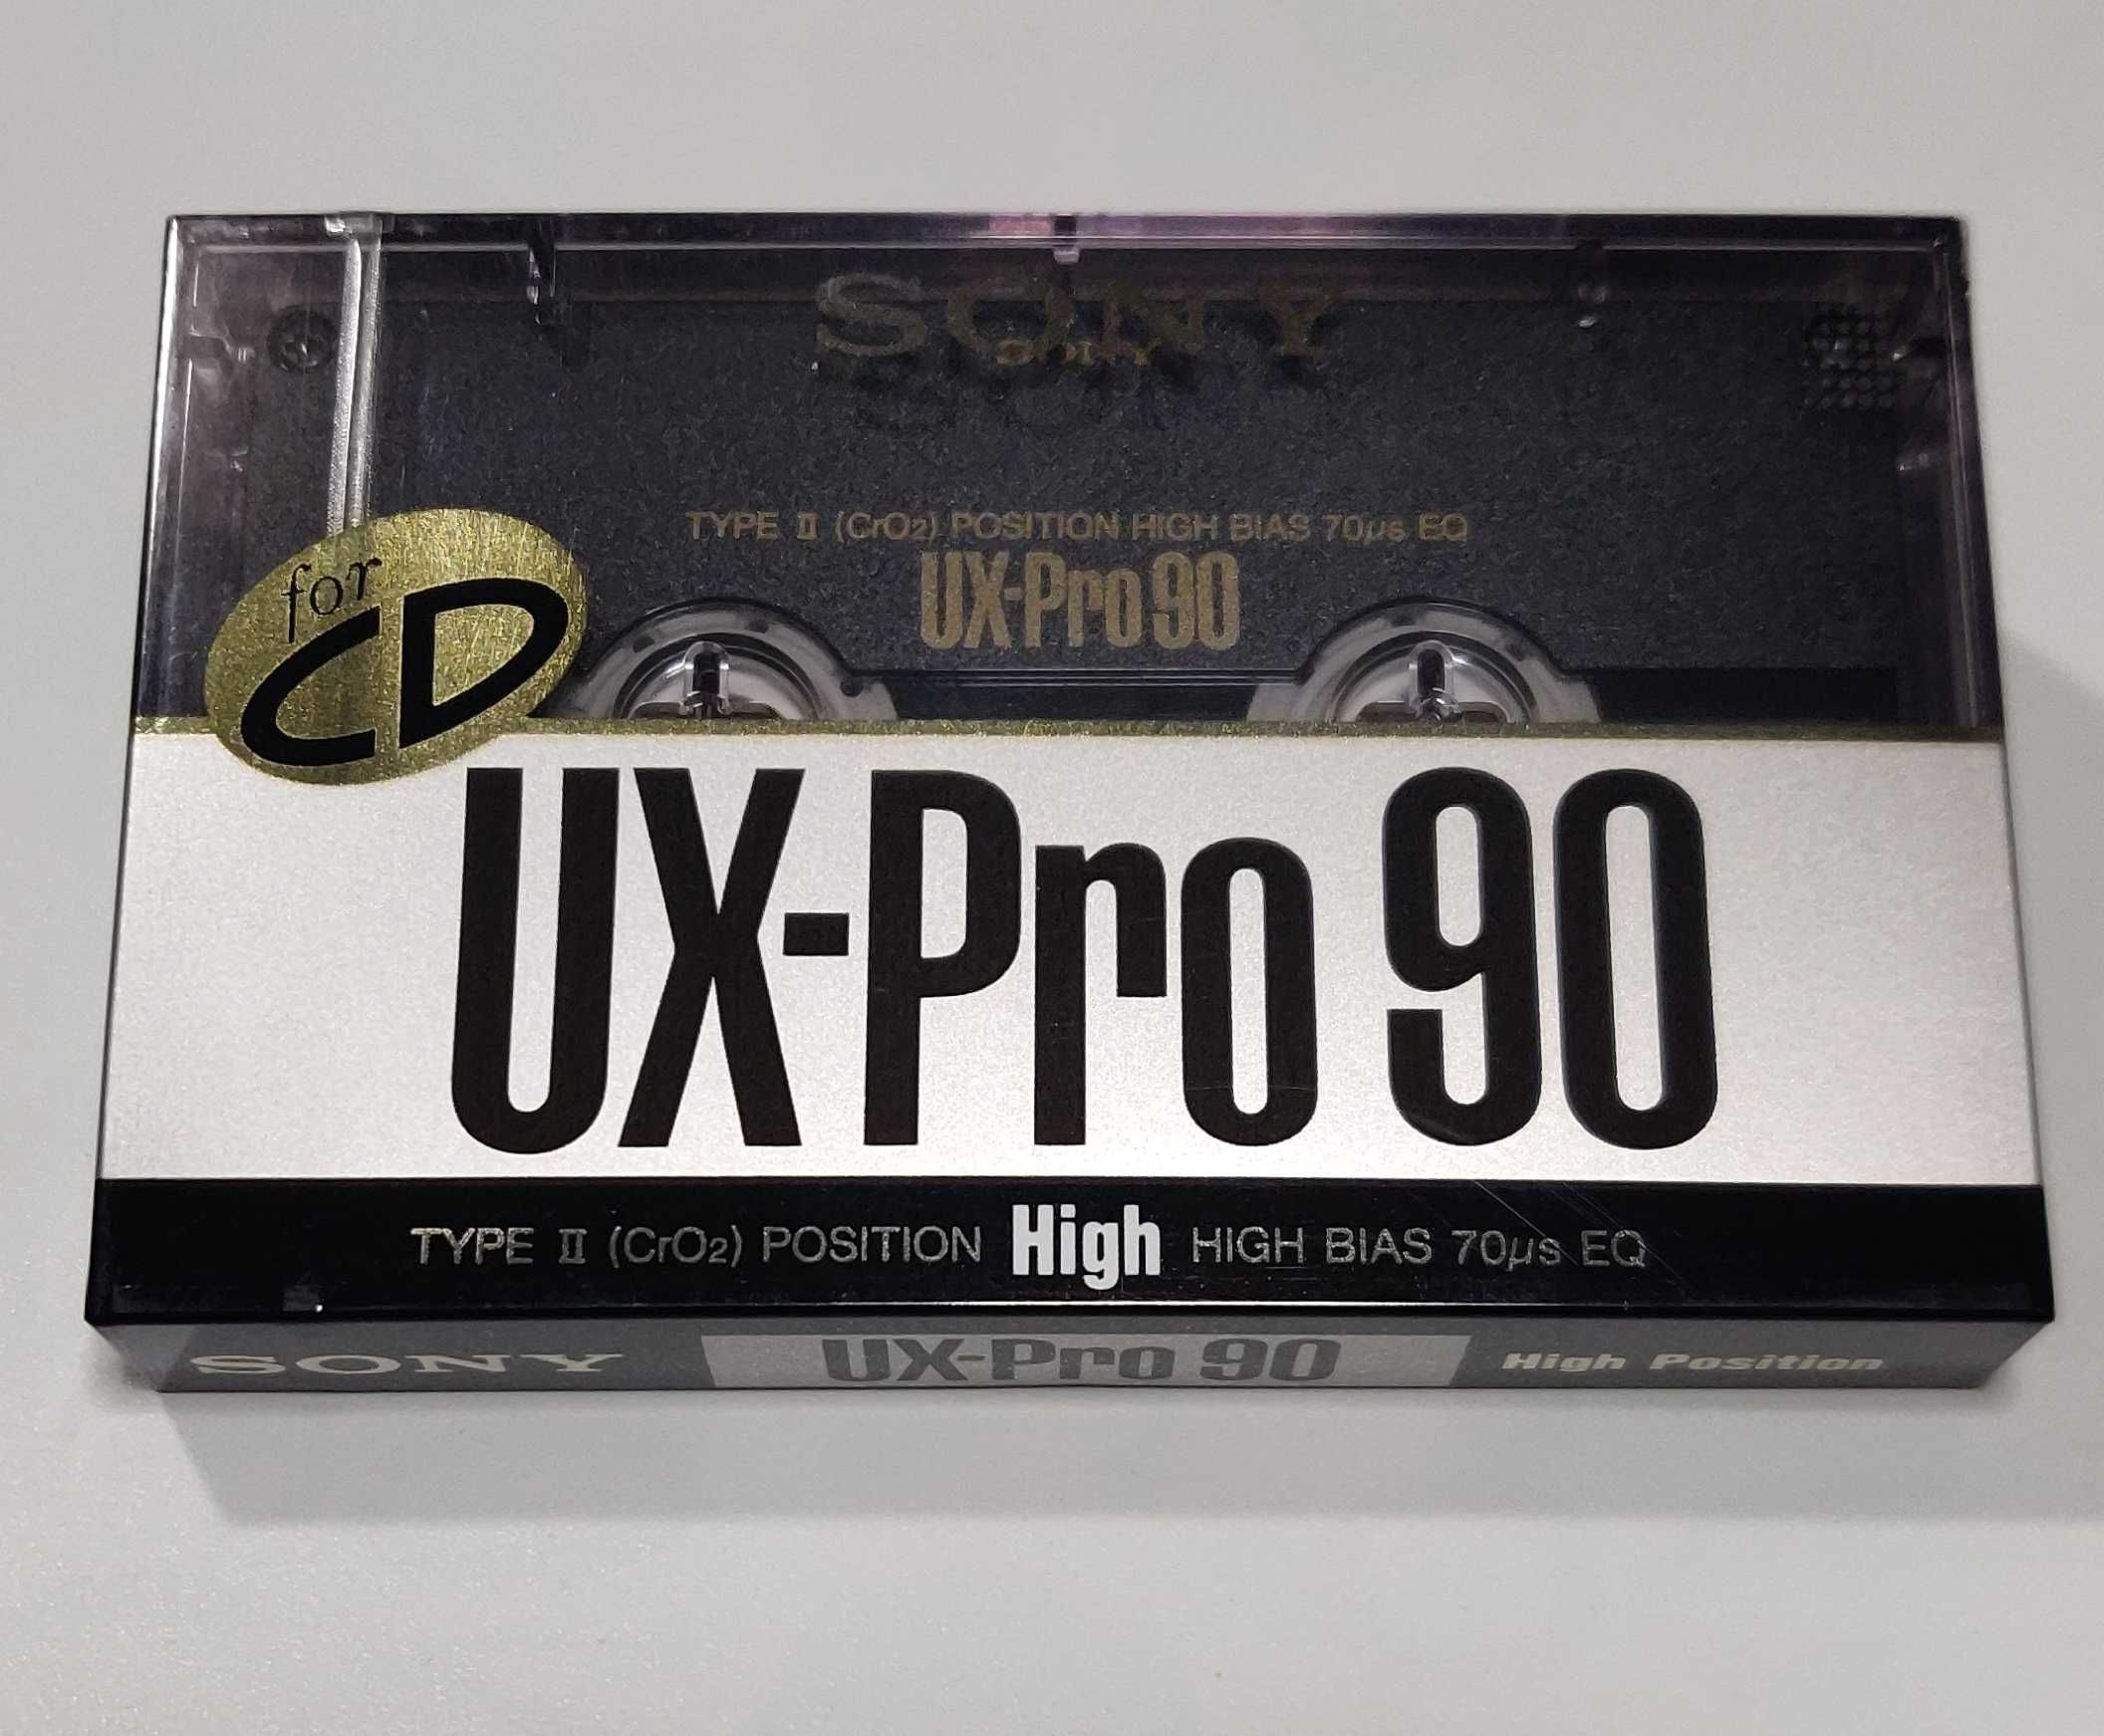 SONY UX-Pro 90 [1989 JAP] _новая аудио кассета в запечатанной упаковке